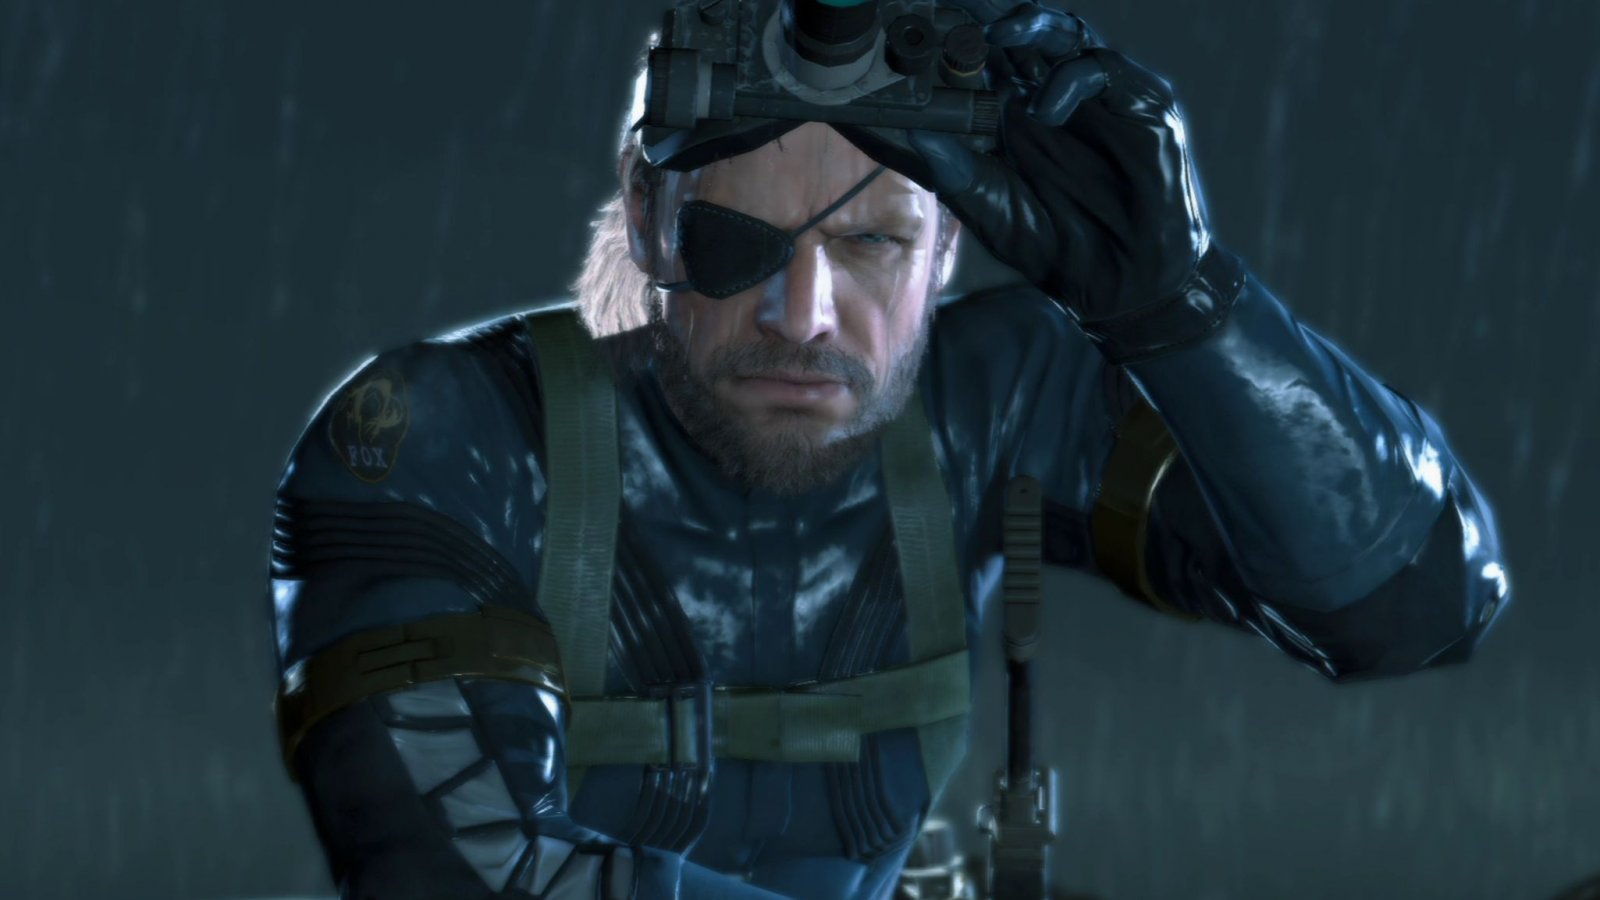 Metal Gear Solid 3 Remake non sarebbe l'unico MGS in arrivo, Corden amplia il report con 3 giochi